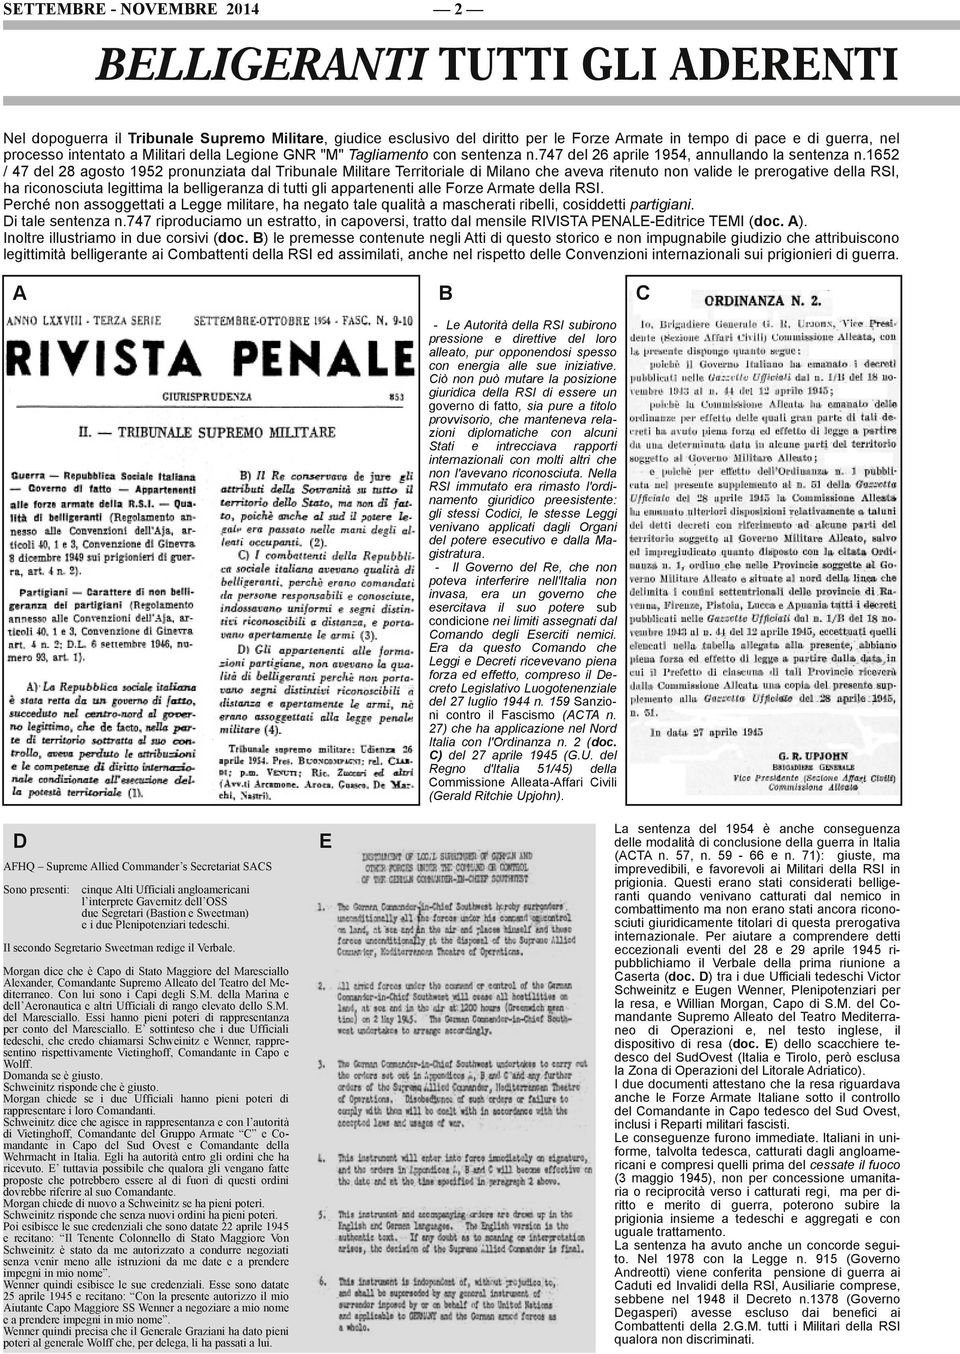 1652 / 47 del 28 agosto 1952 pronunziata dal Tribunale Militare Territoriale di Milano che aveva ritenuto non valide le prerogative della RSI, ha riconosciuta legittima la belligeranza di tutti gli